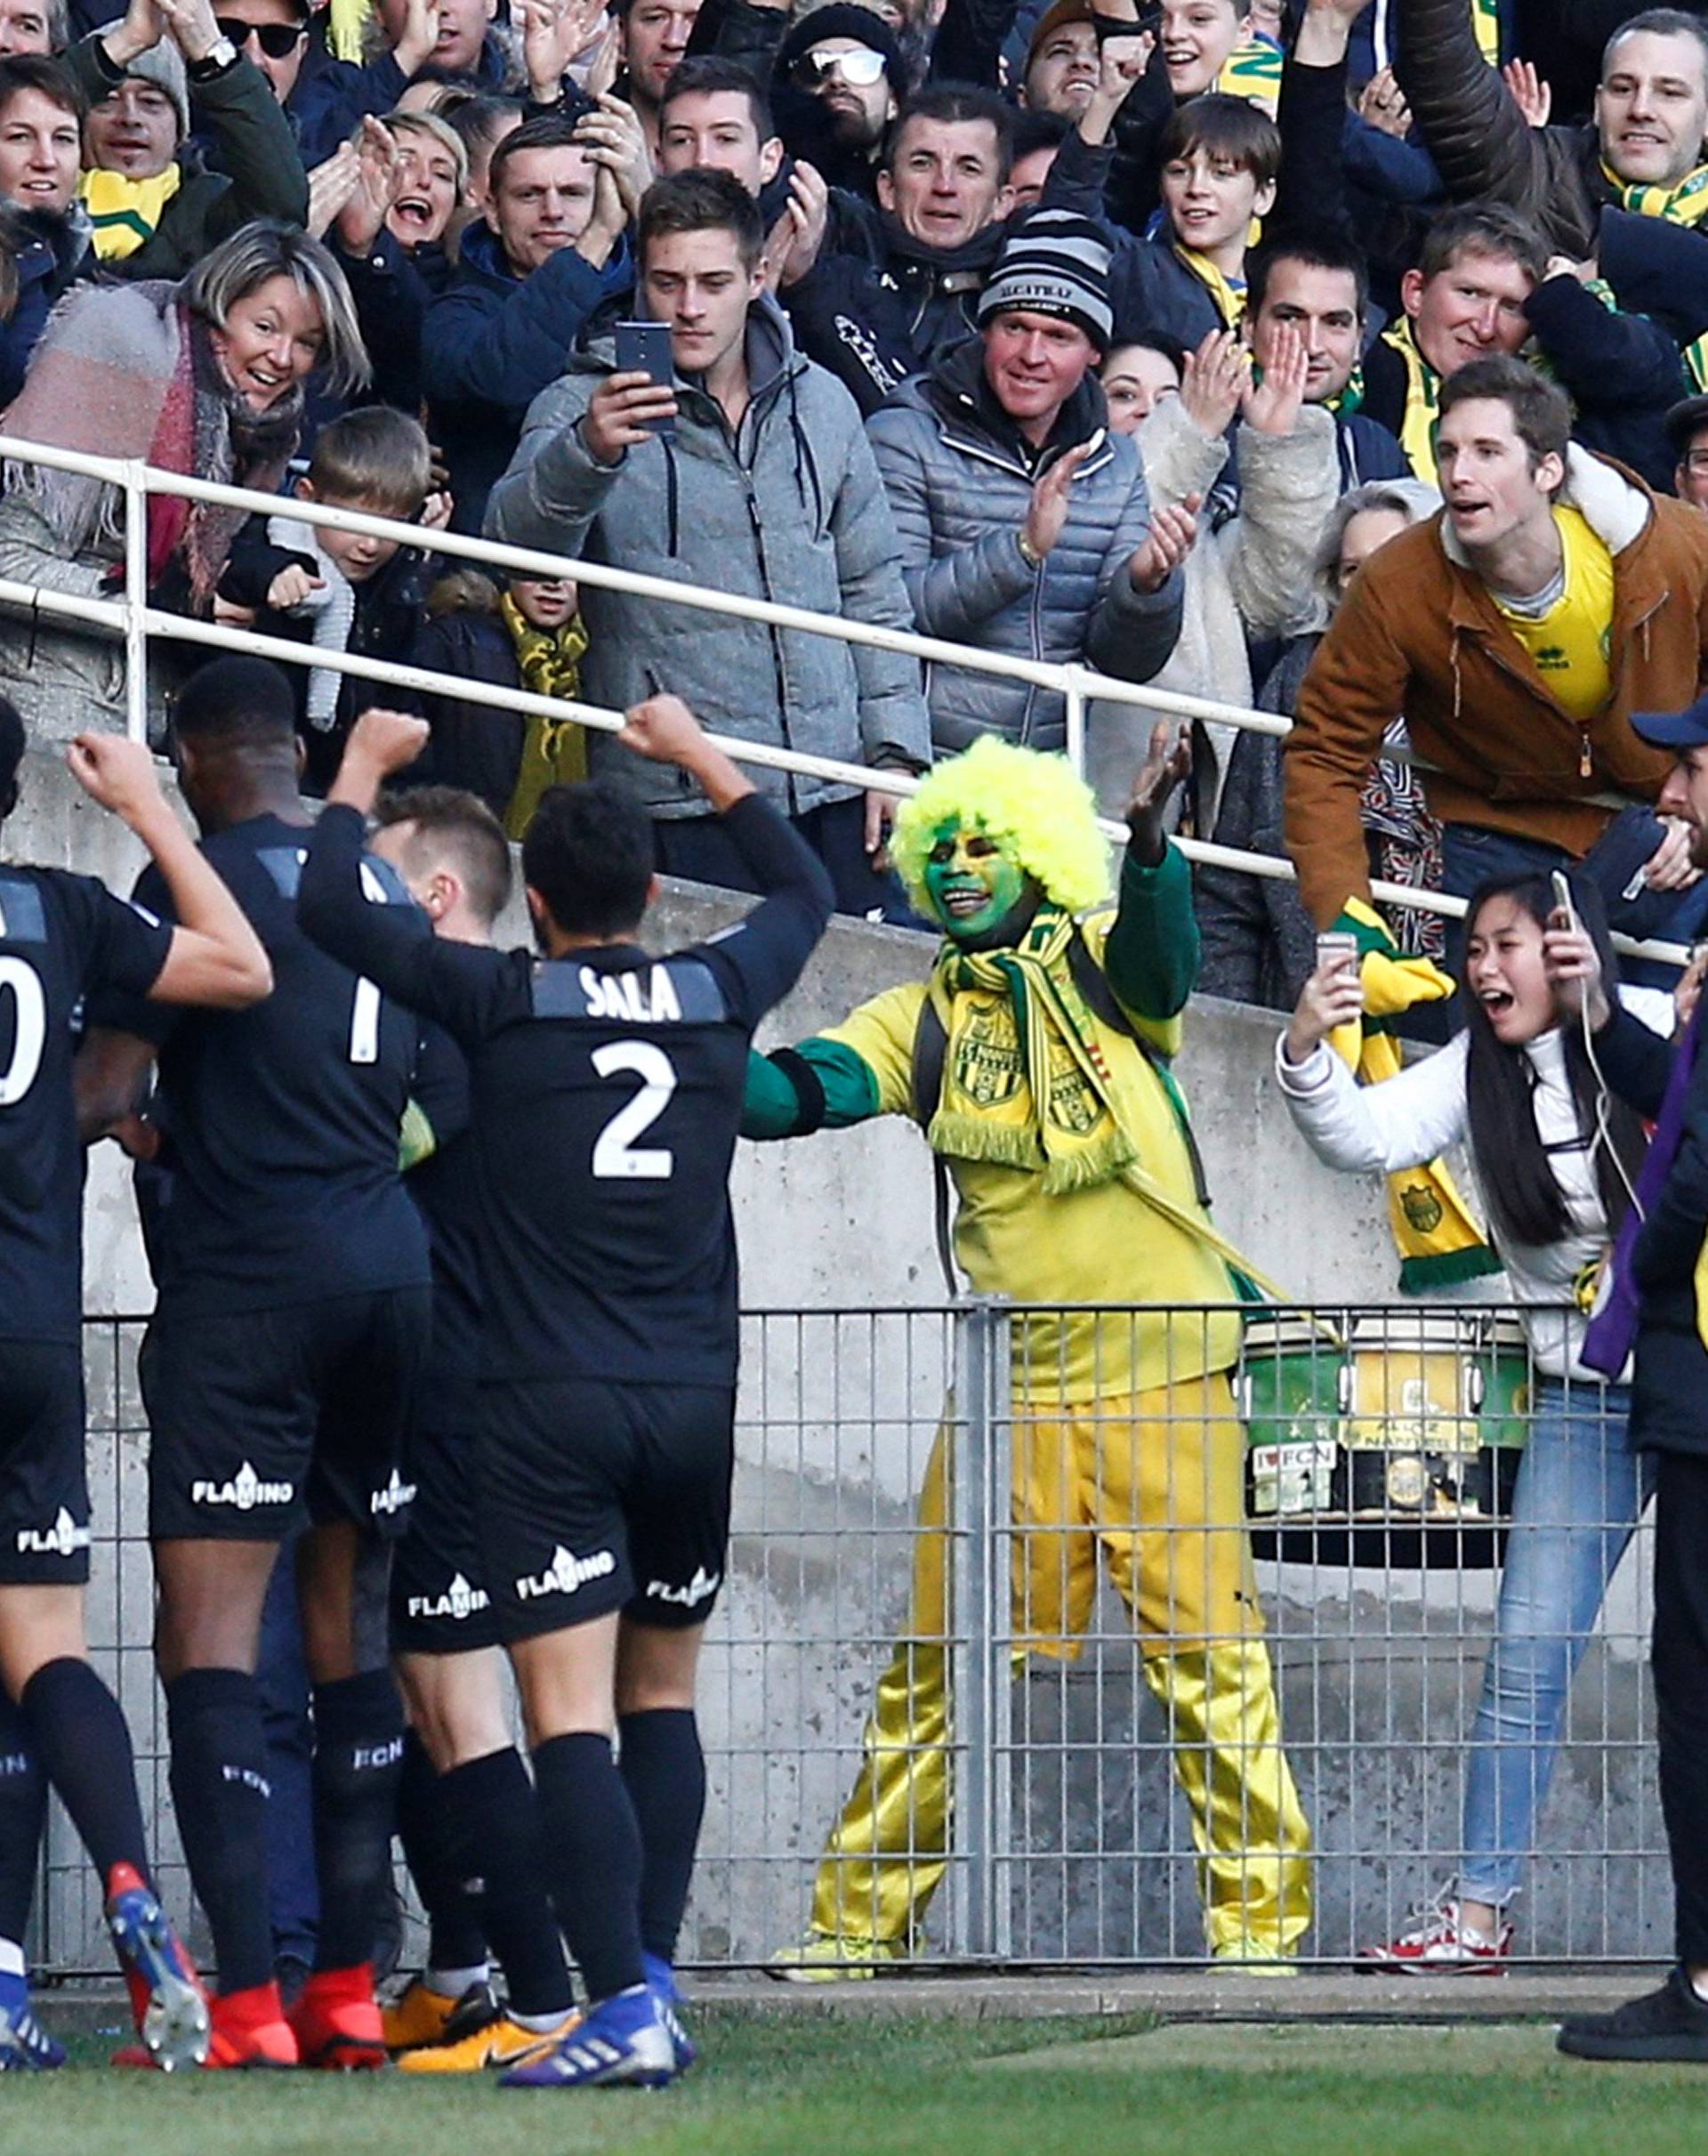 Ligue 1 - FC Nantes v Nimes Olympique